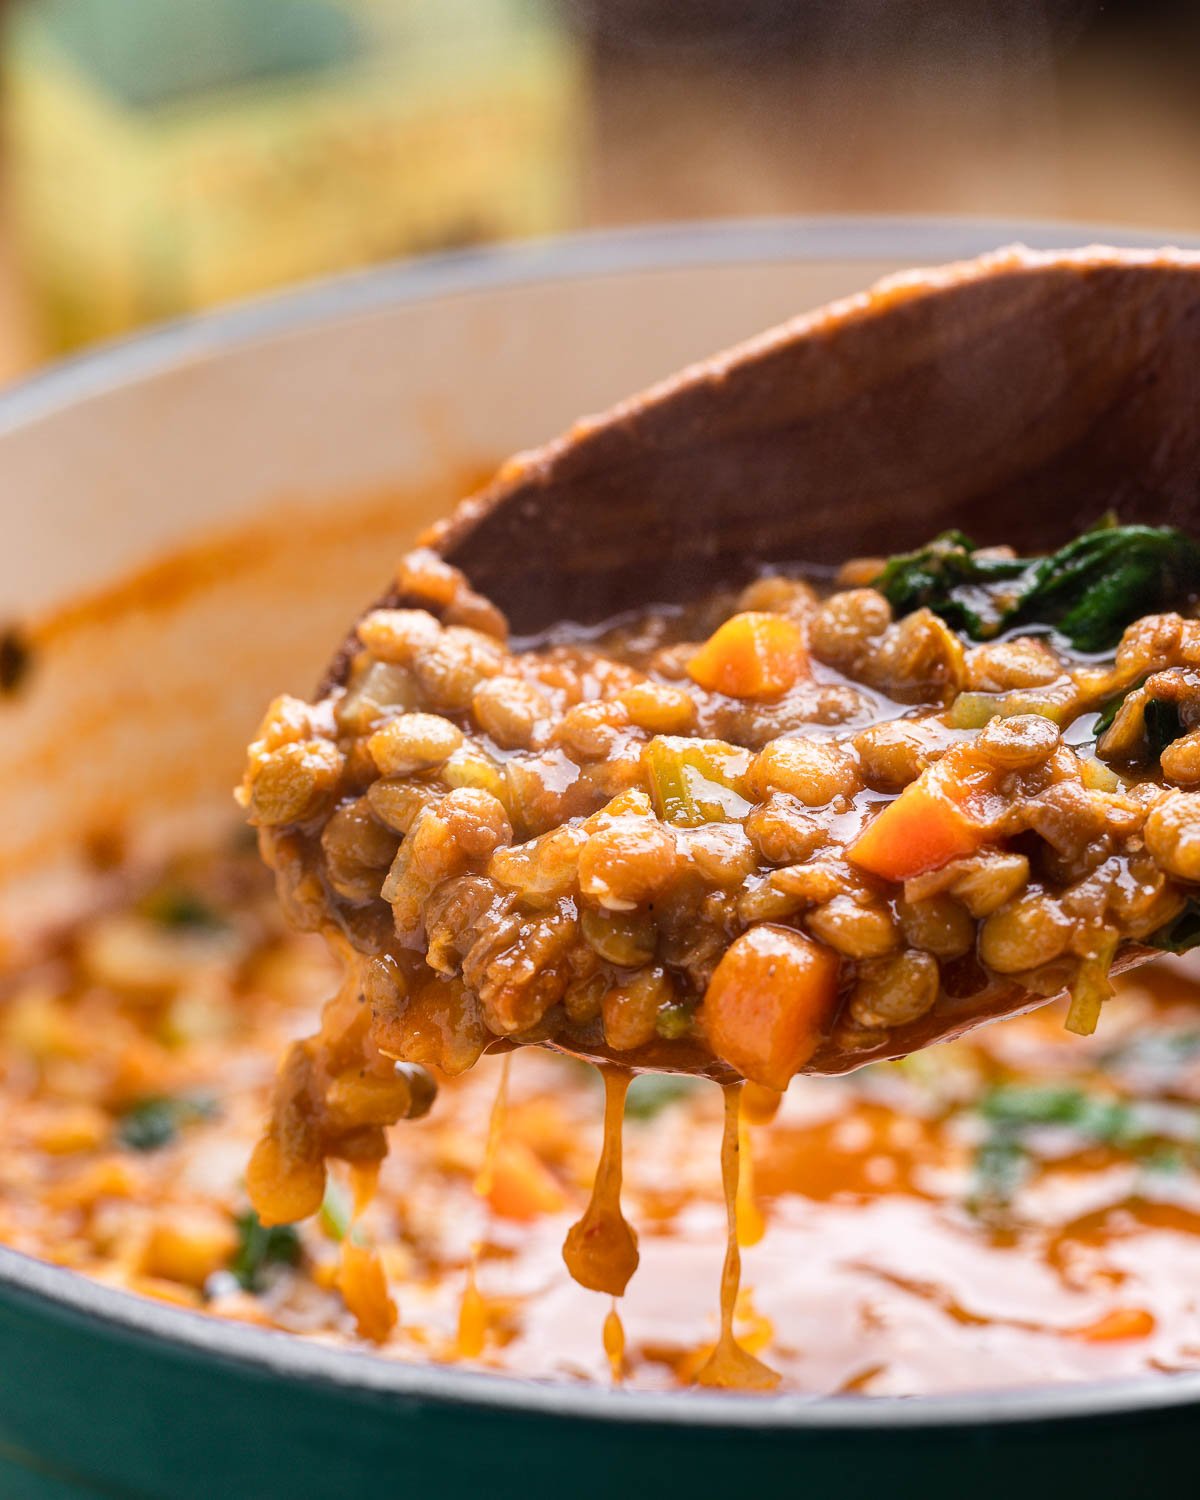 Large wooden ladle holding Italian lentil soup.